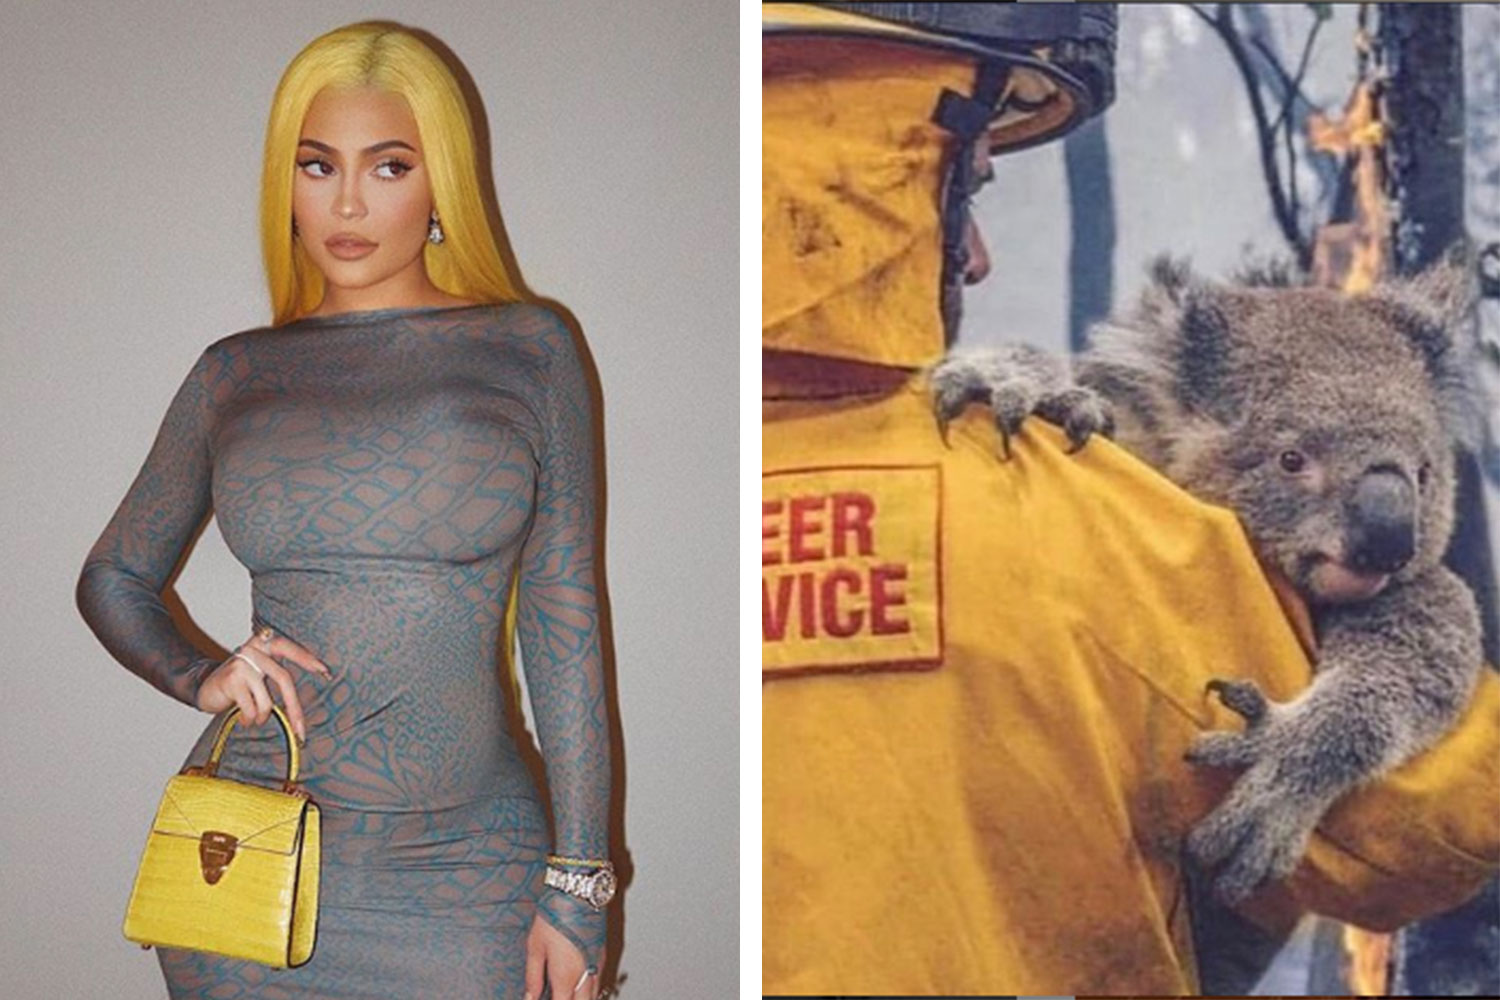 Kylie Jenner Slammed for Fur Slippers After Australian Animals Post